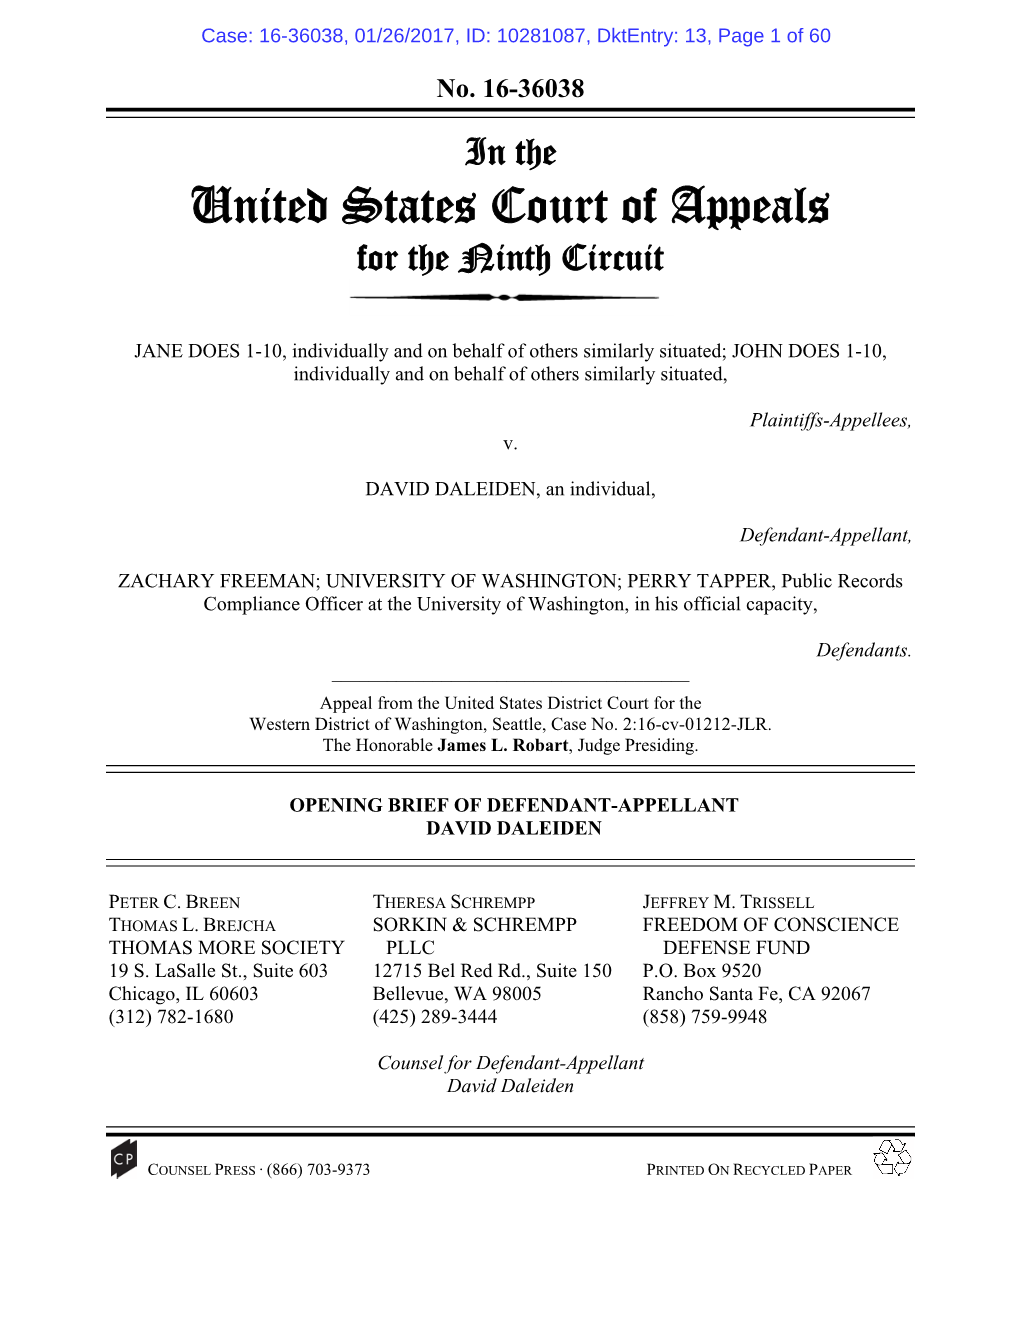 Brief of Defendant-Appellant Daleiden